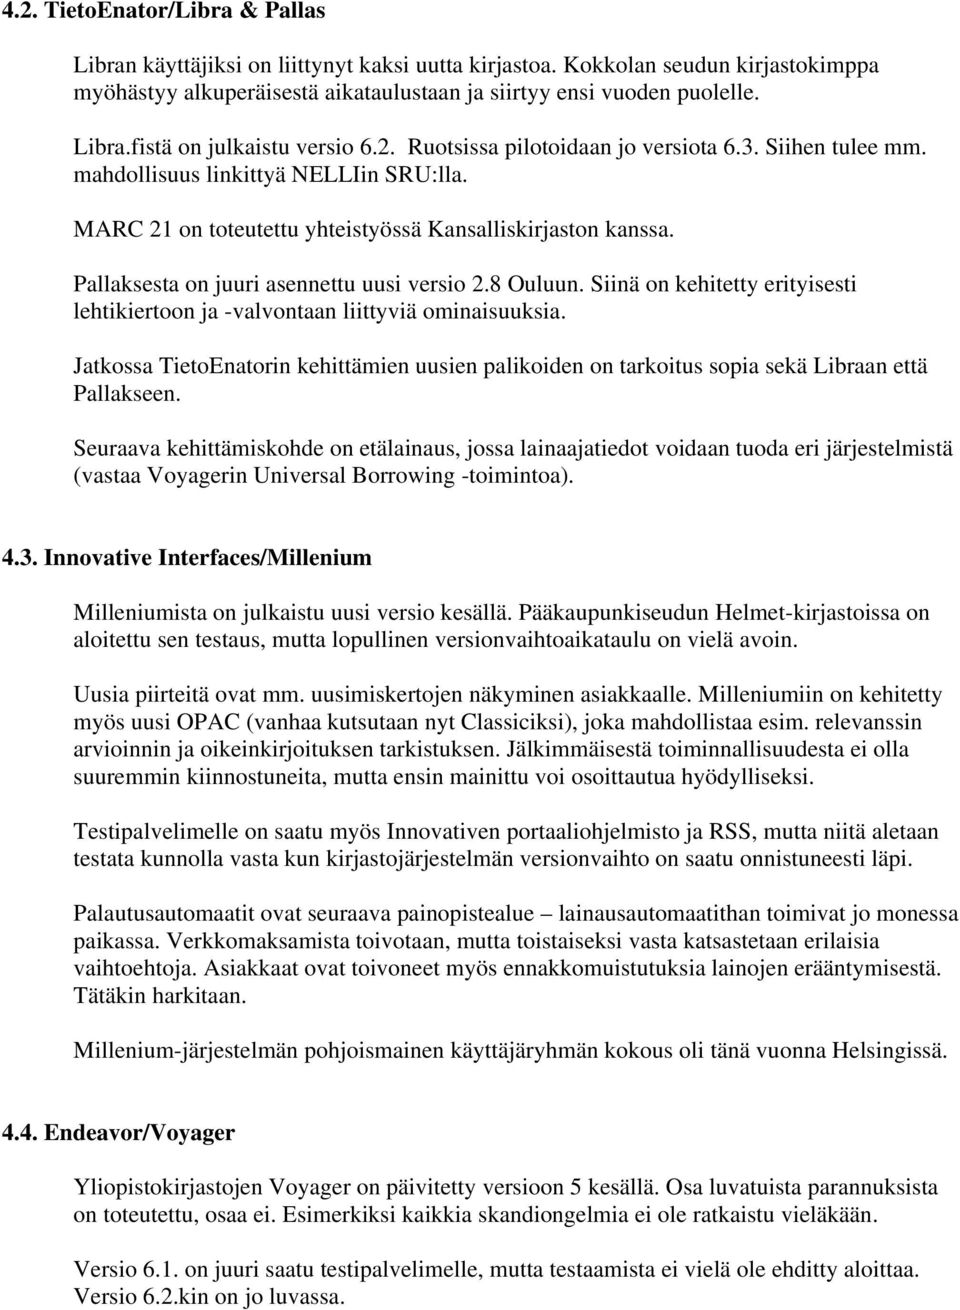 Pallaksesta on juuri asennettu uusi versio 2.8 Ouluun. Siinä on kehitetty erityisesti lehtikiertoon ja -valvontaan liittyviä ominaisuuksia.